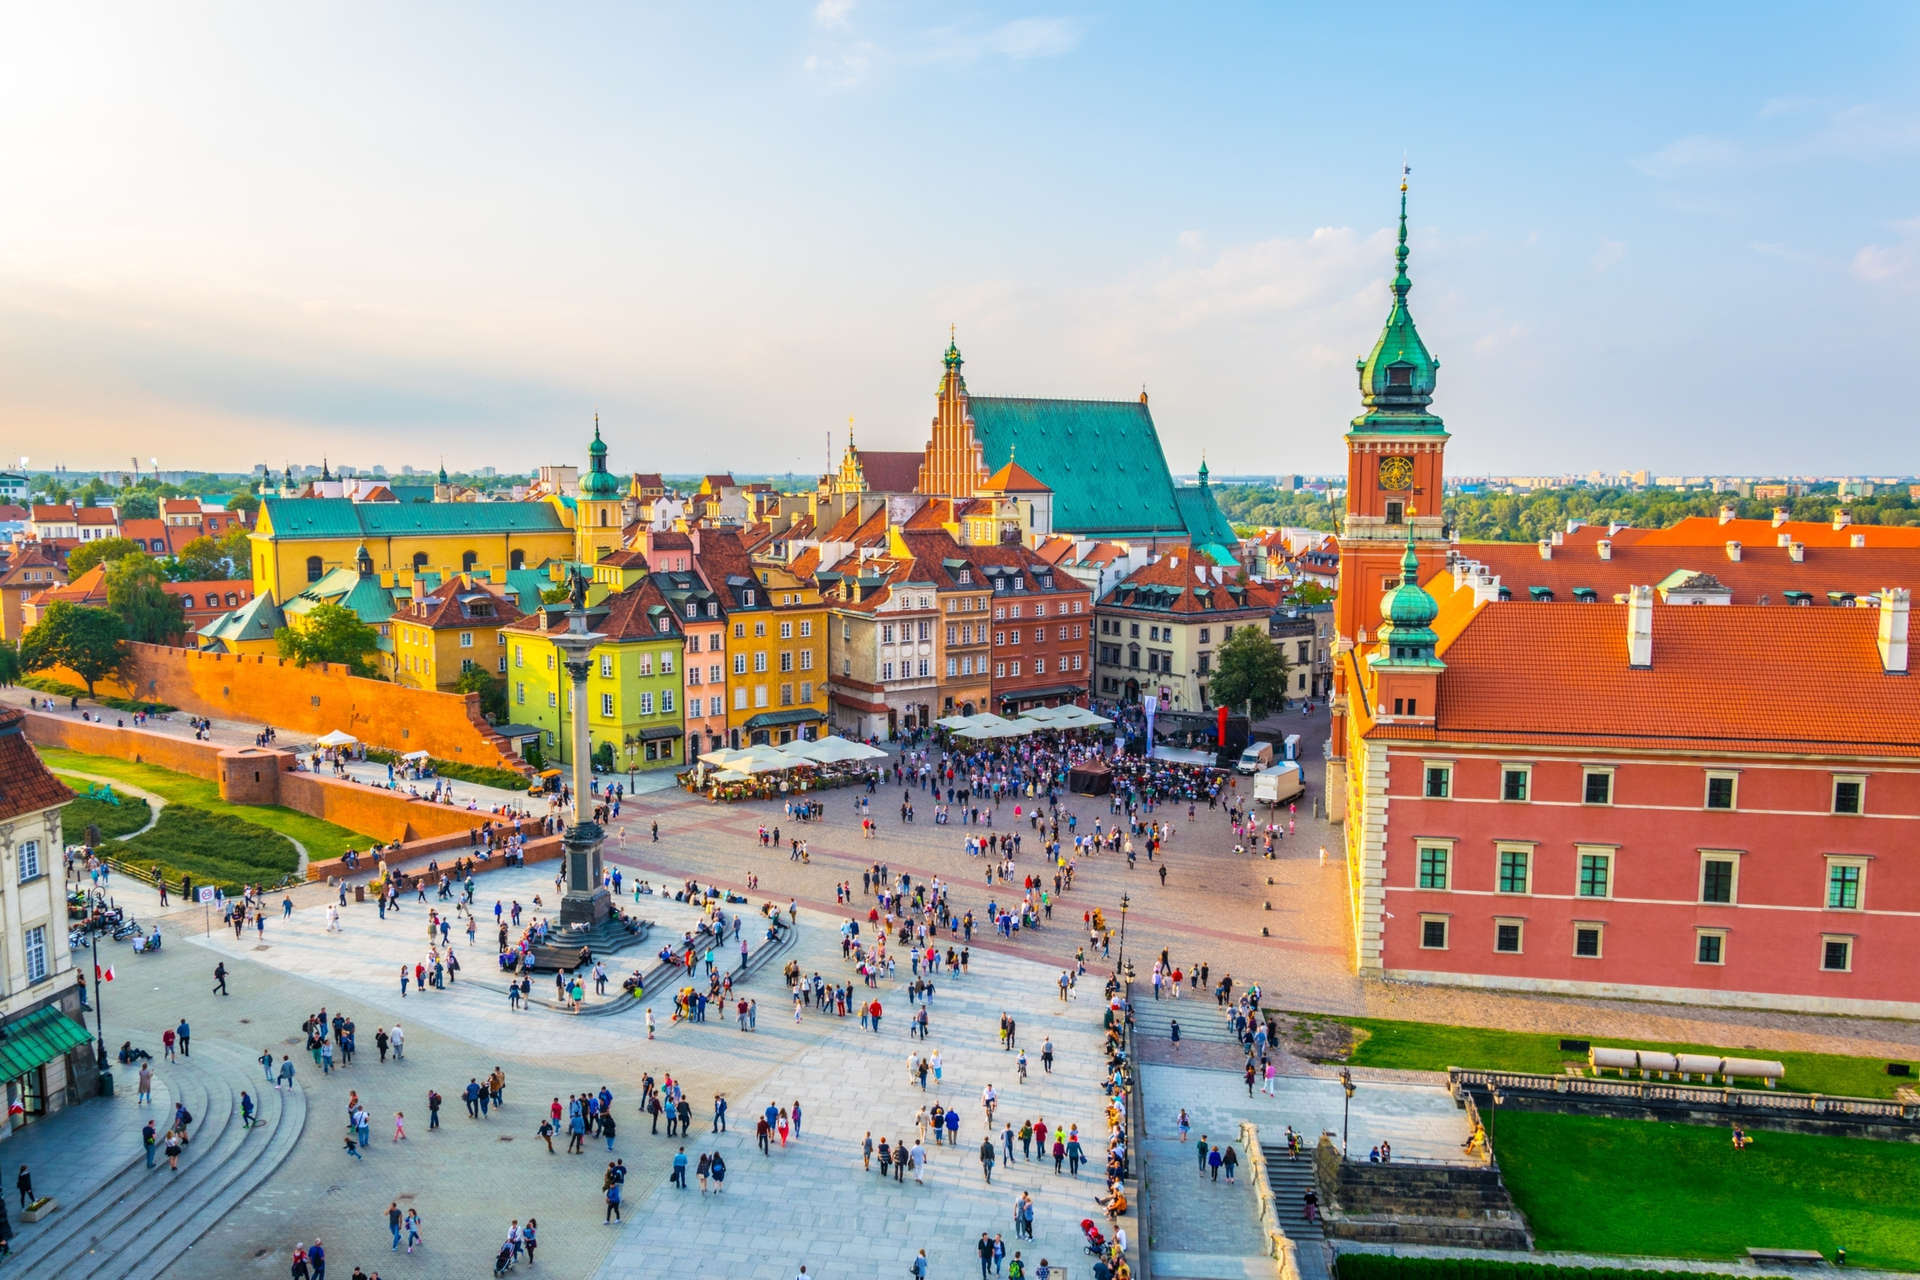 Warschau ist das wirtschaftliche und kulturelle Zentrum des Landes